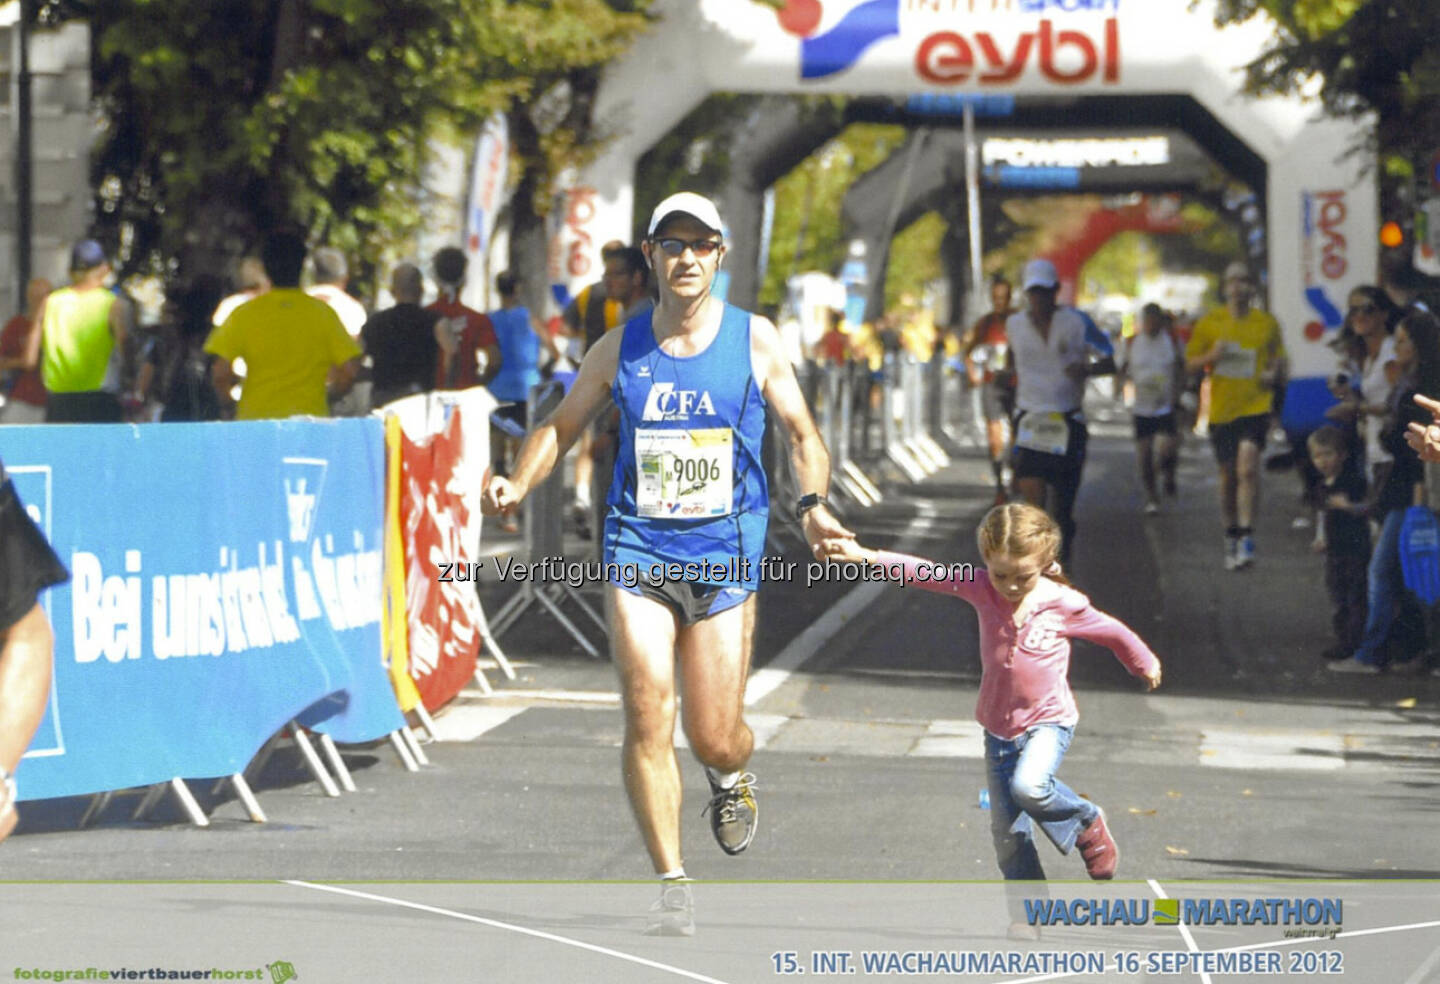 Günther Artner, Erste Group: Nicht nur an der Wiener Börse gab es im Jahr 2012 deutliche Steigerungen - mein Jahr der 3 Marathonrekorde
